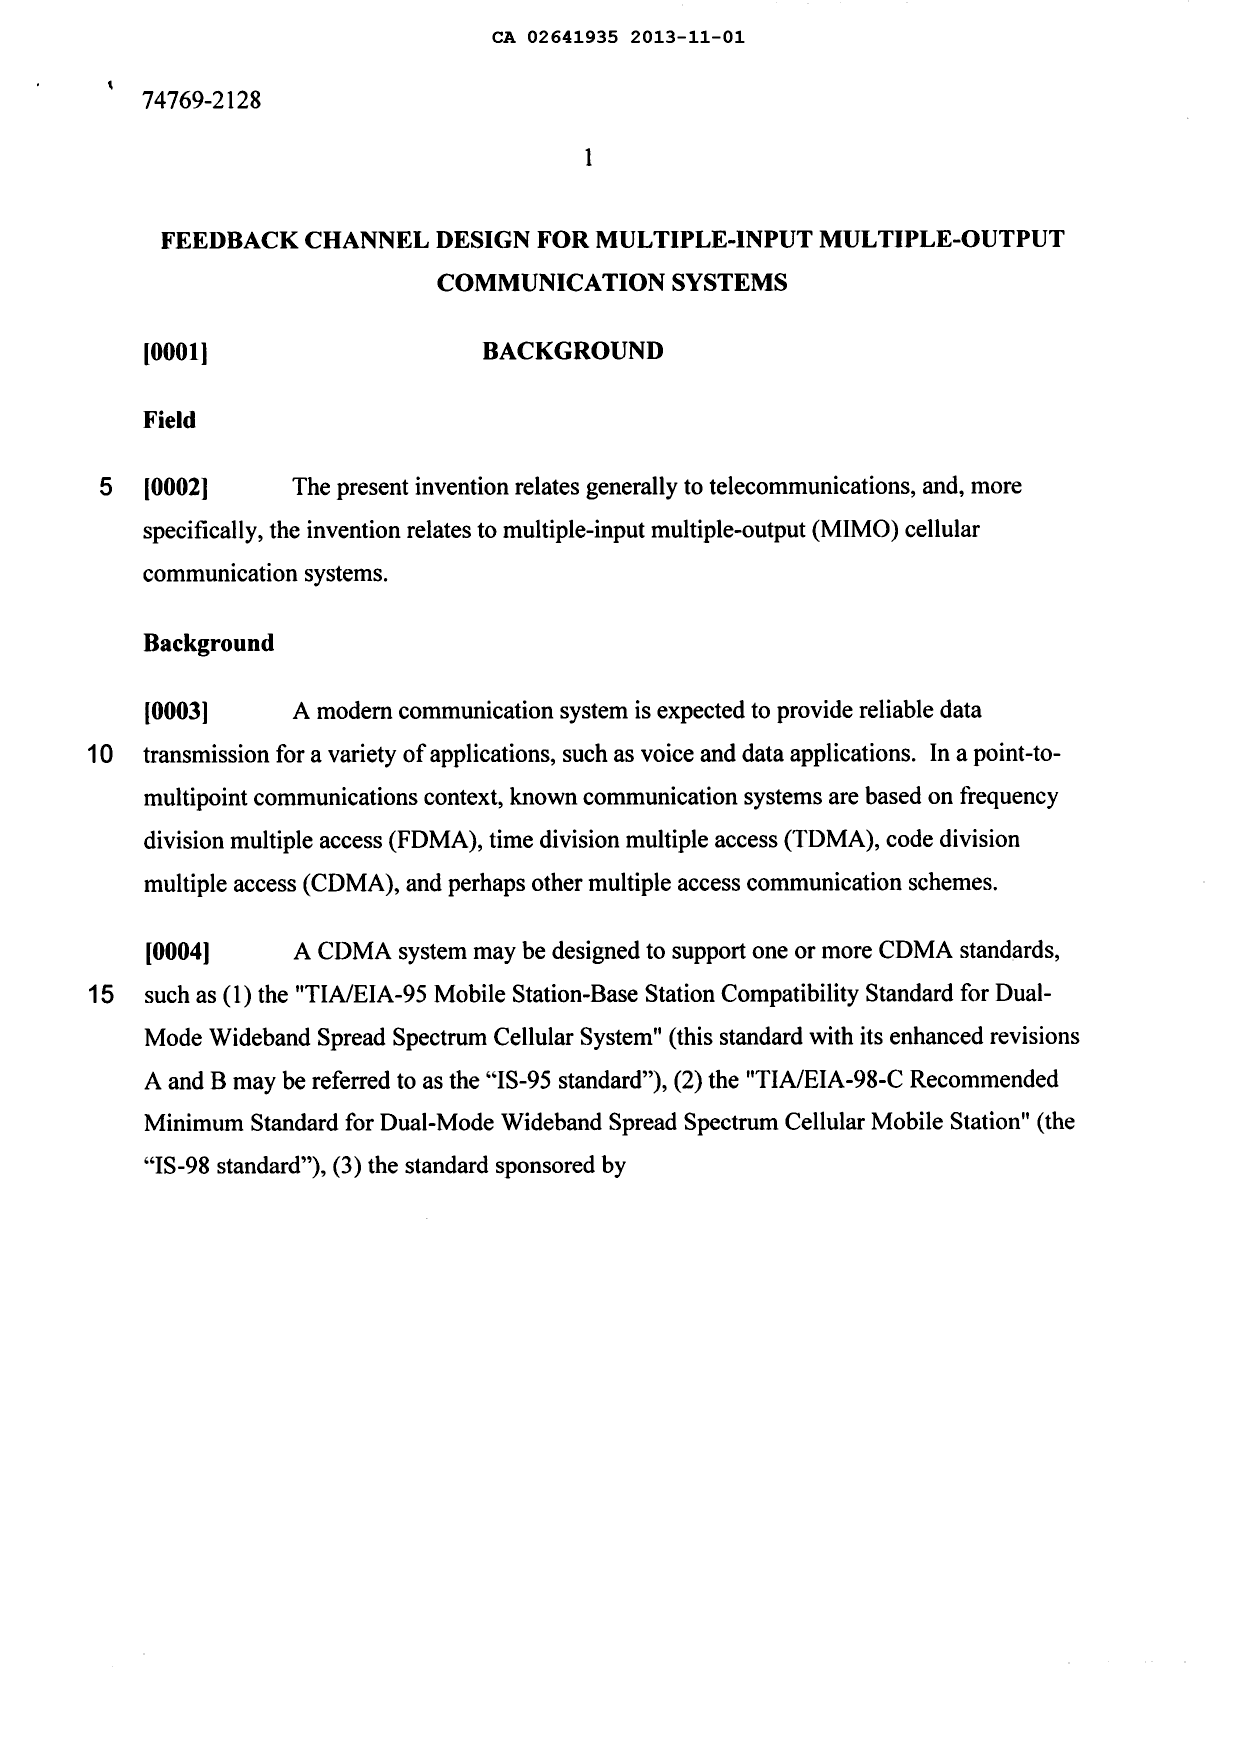 Canadian Patent Document 2641935. Description 20131101. Image 1 of 30